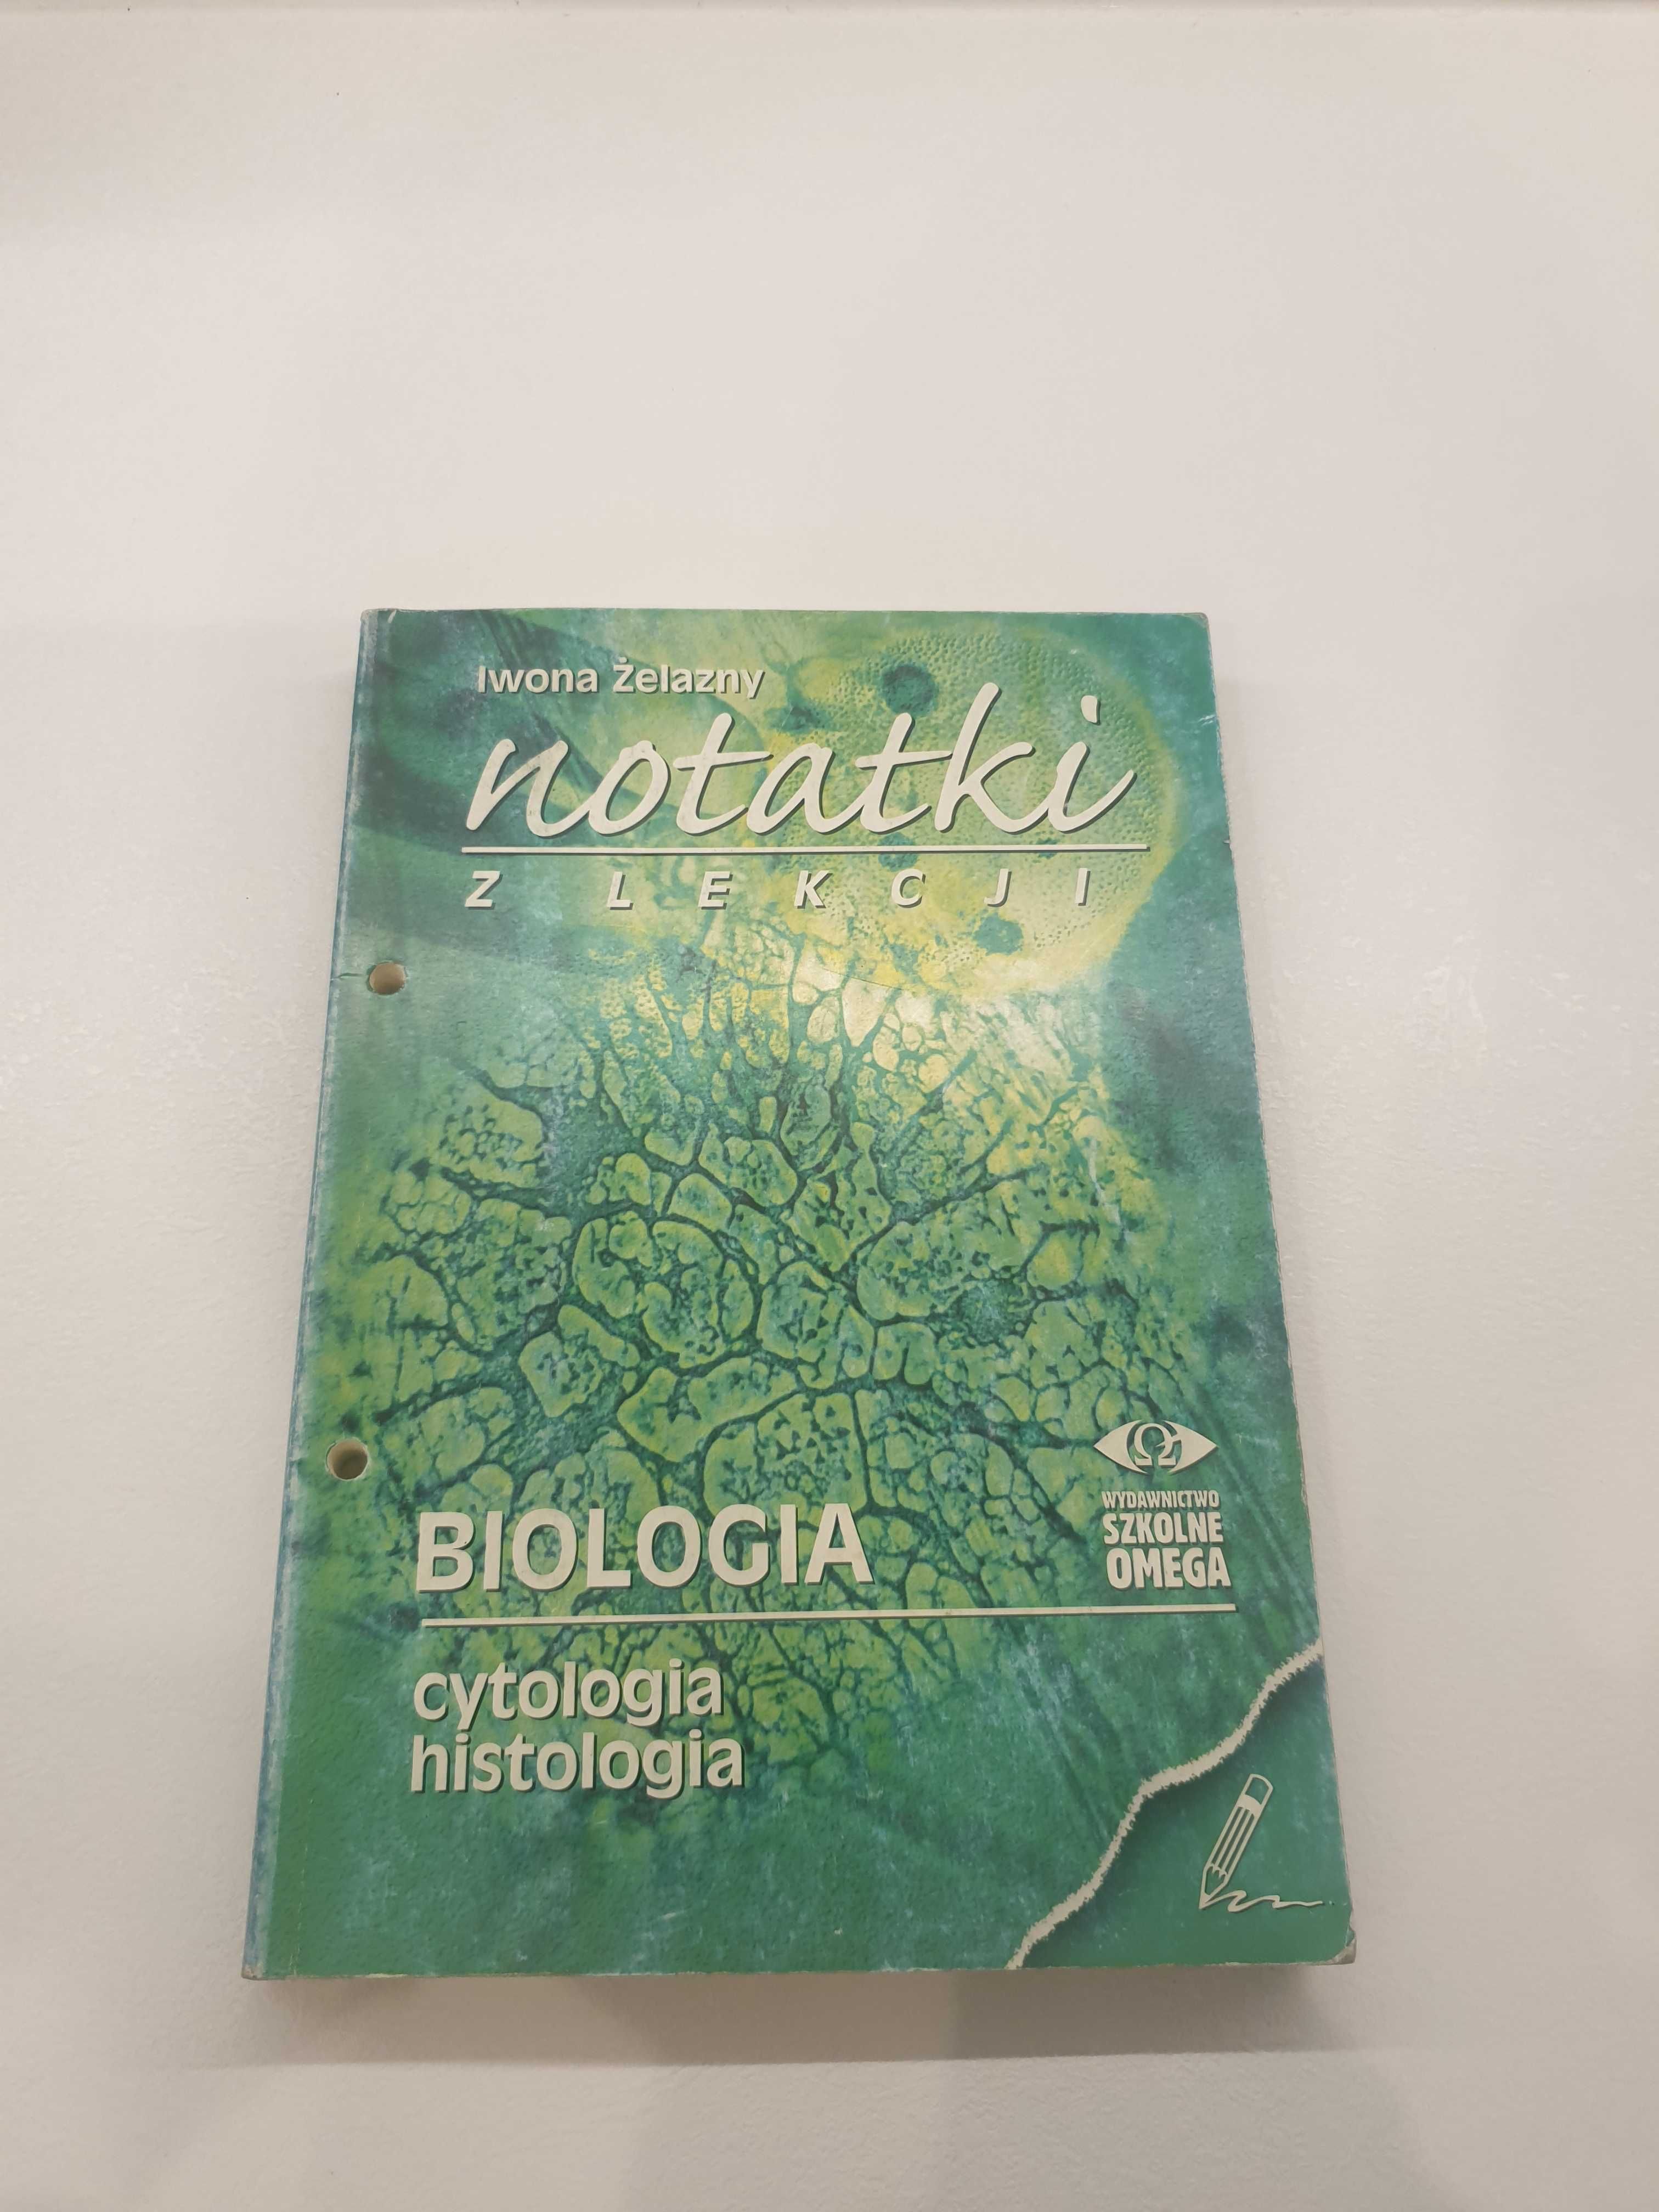 Notatki z lekcji - Biologia: cytologia, histologia – ŻELAZNY - omega